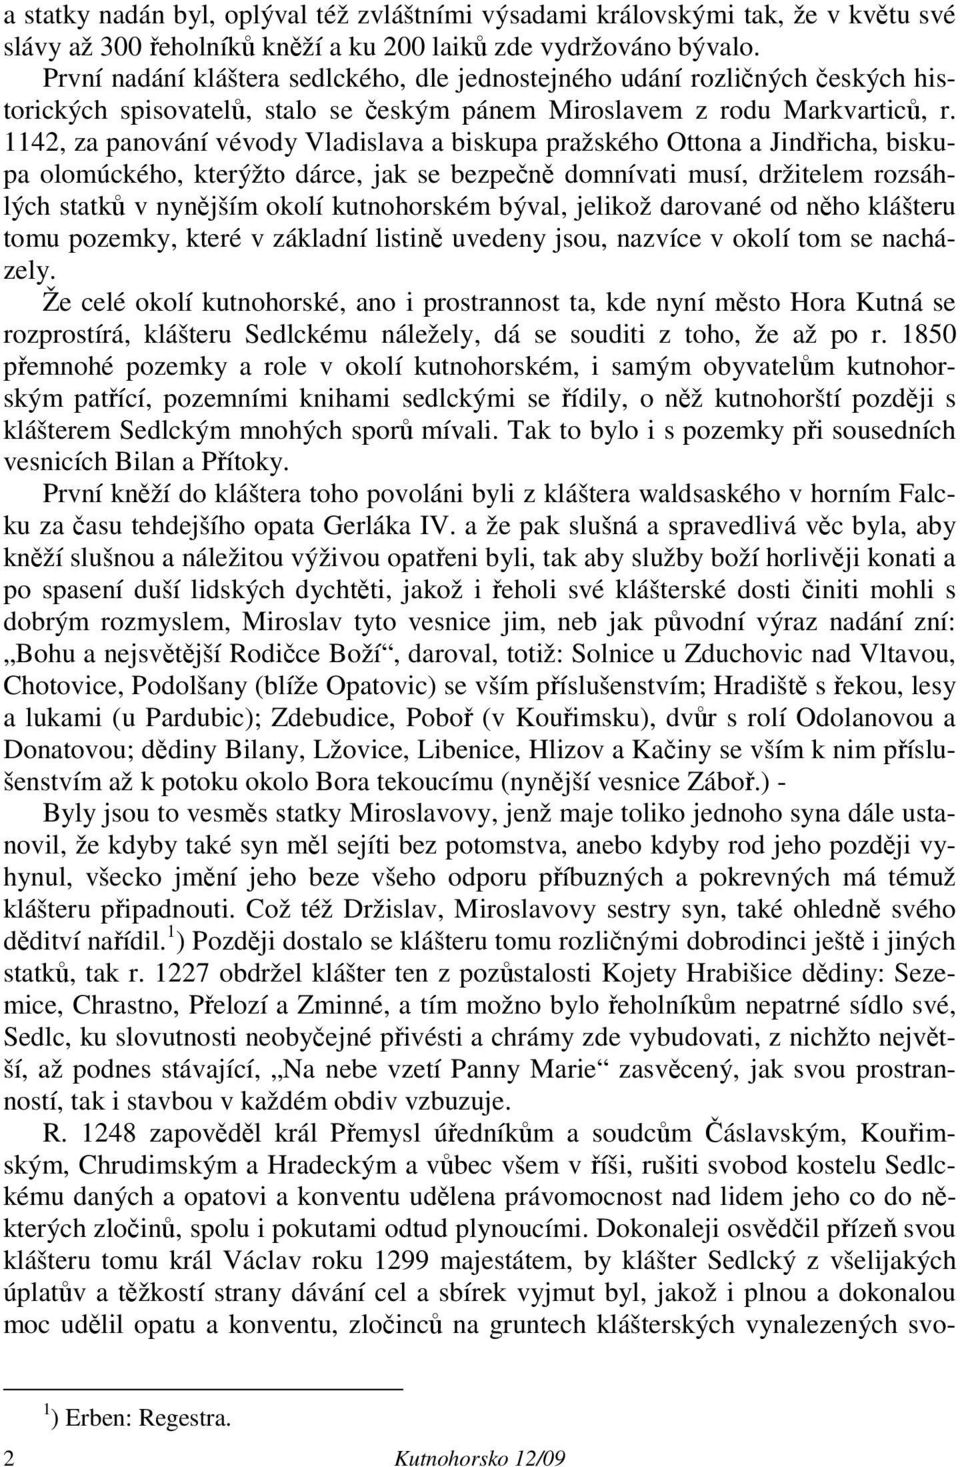 1142, za panování vévody Vladislava a biskupa pražského Ottona a Jindřicha, biskupa olomúckého, kterýžto dárce, jak se bezpečně domnívati musí, držitelem rozsáhlých statků v nynějším okolí